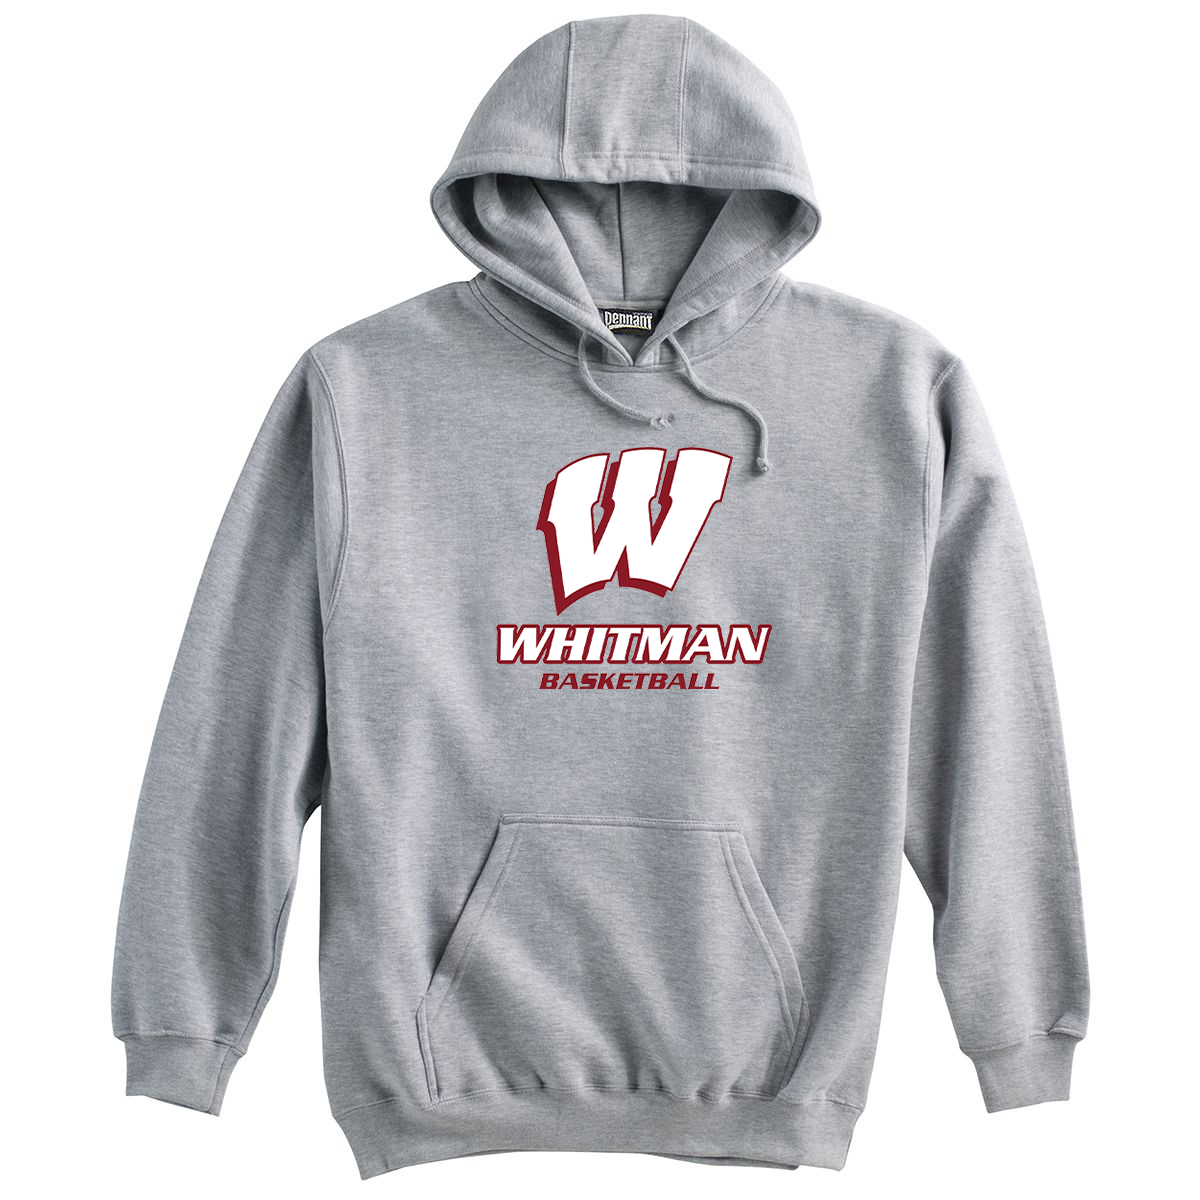 Whitman Basketball Sweatshirt